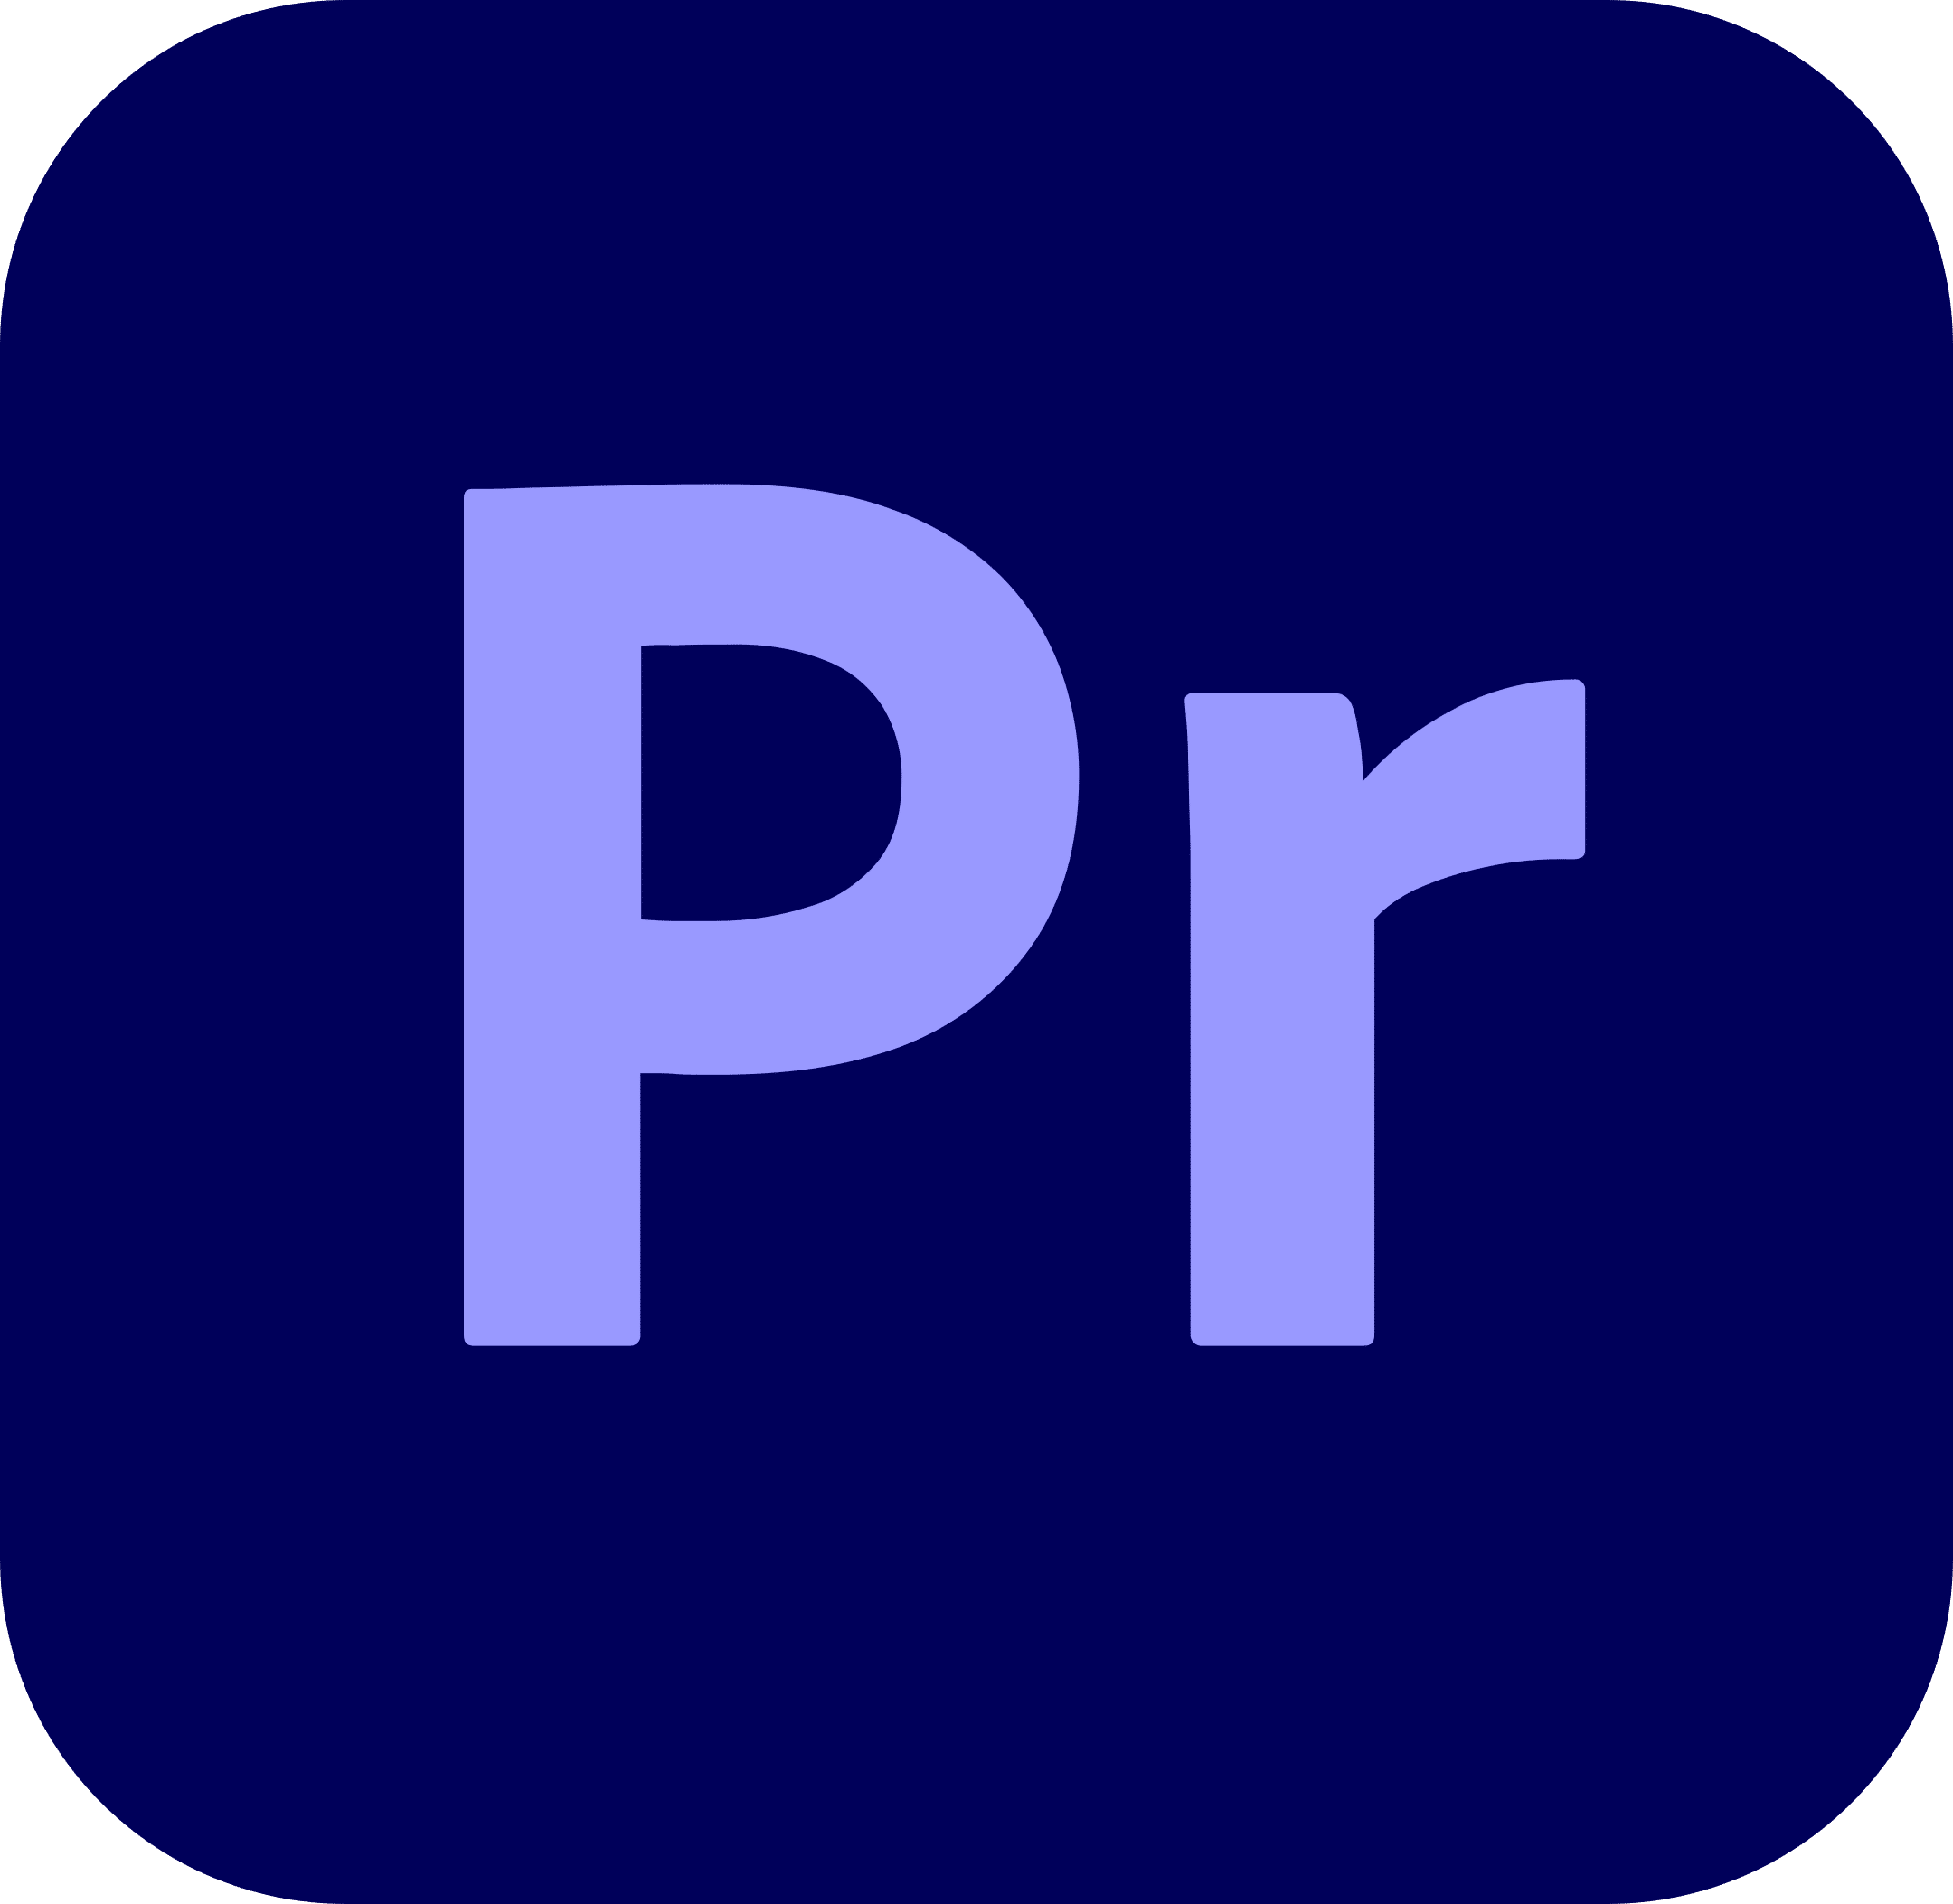 adobe-premiere-pro-logo-1-1